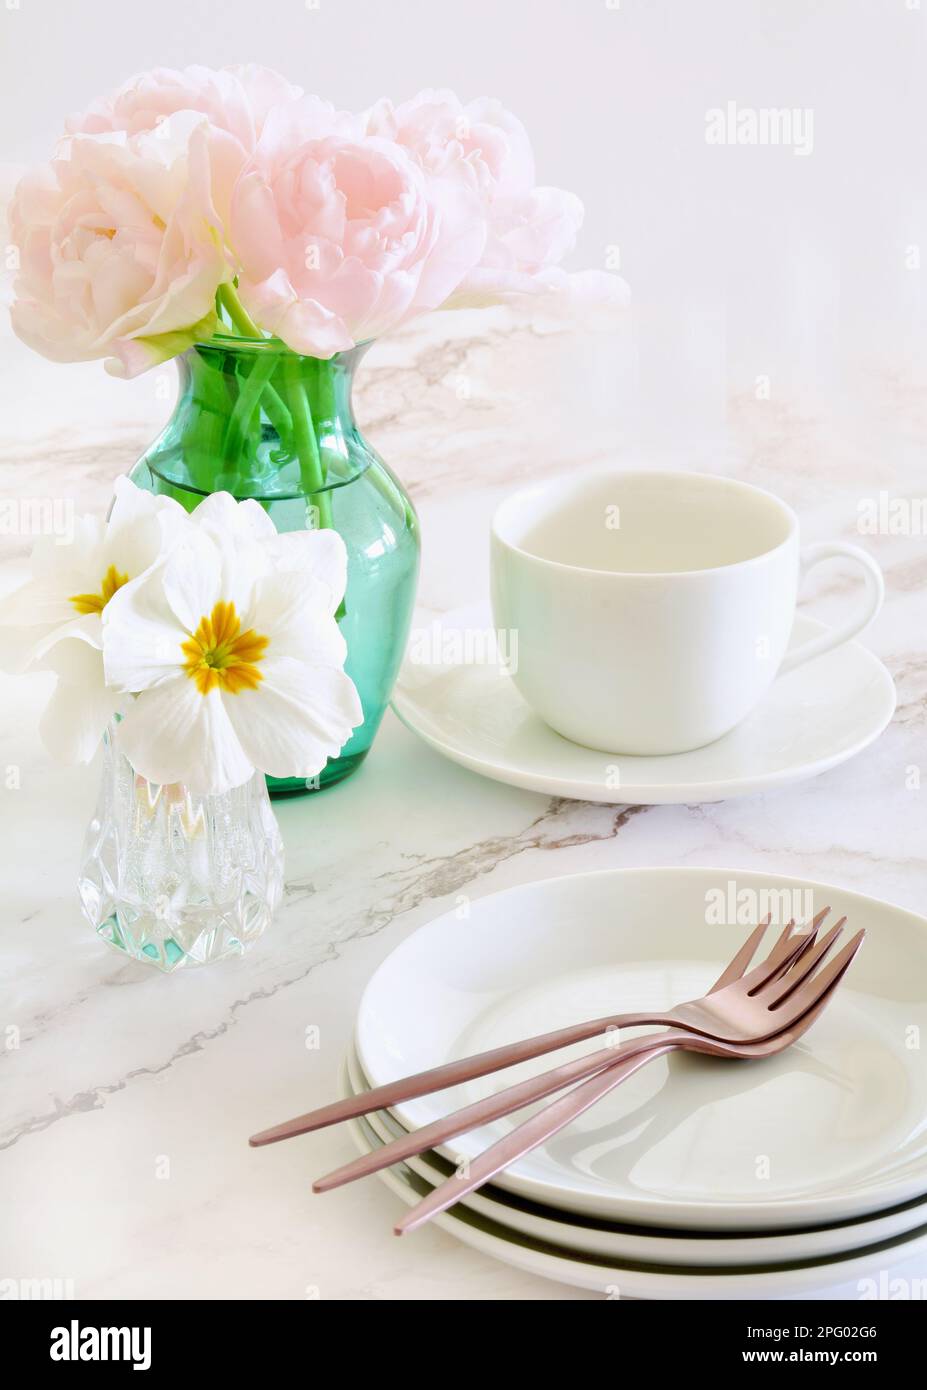 Delicati tulipani rosa con fiori di primula bianchi e piatti da dessert con forchette in oro rosa su fondo in marmo. Formato verticale con focalizzazione sui tulipani. Foto Stock